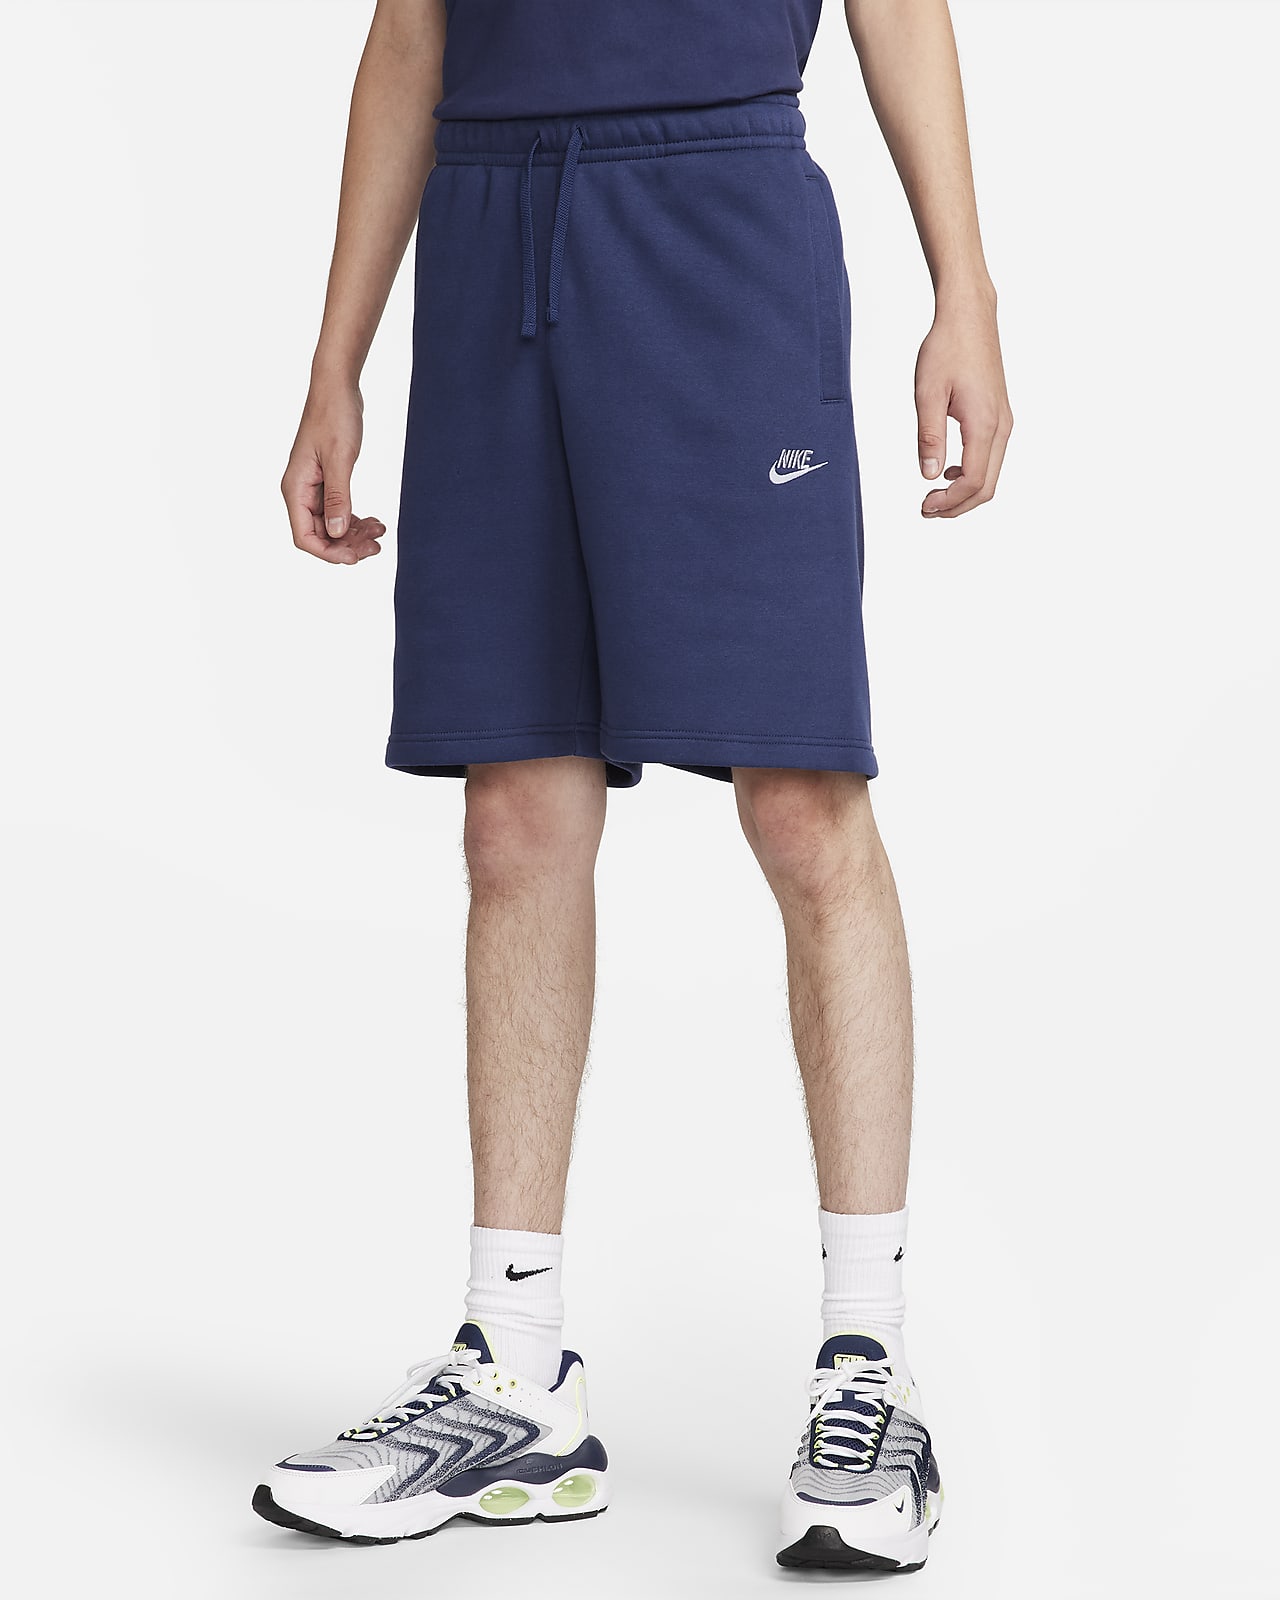 Shorts para hombre Nike Club Fleece.